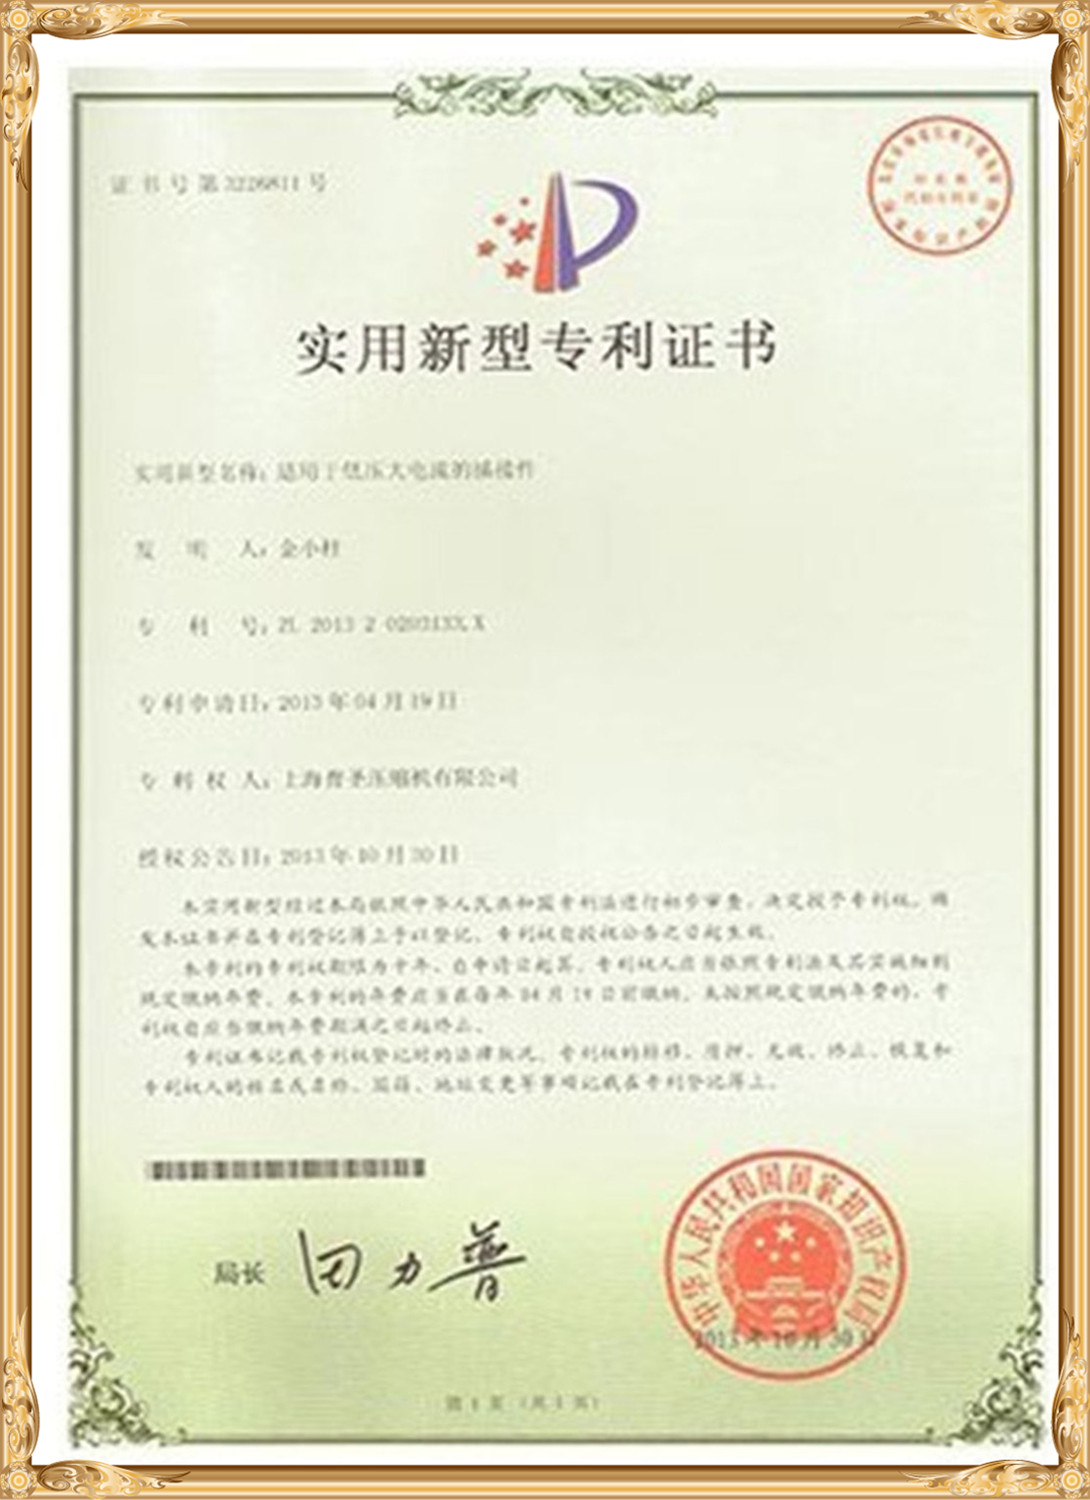 Testen & Certificaten (7)